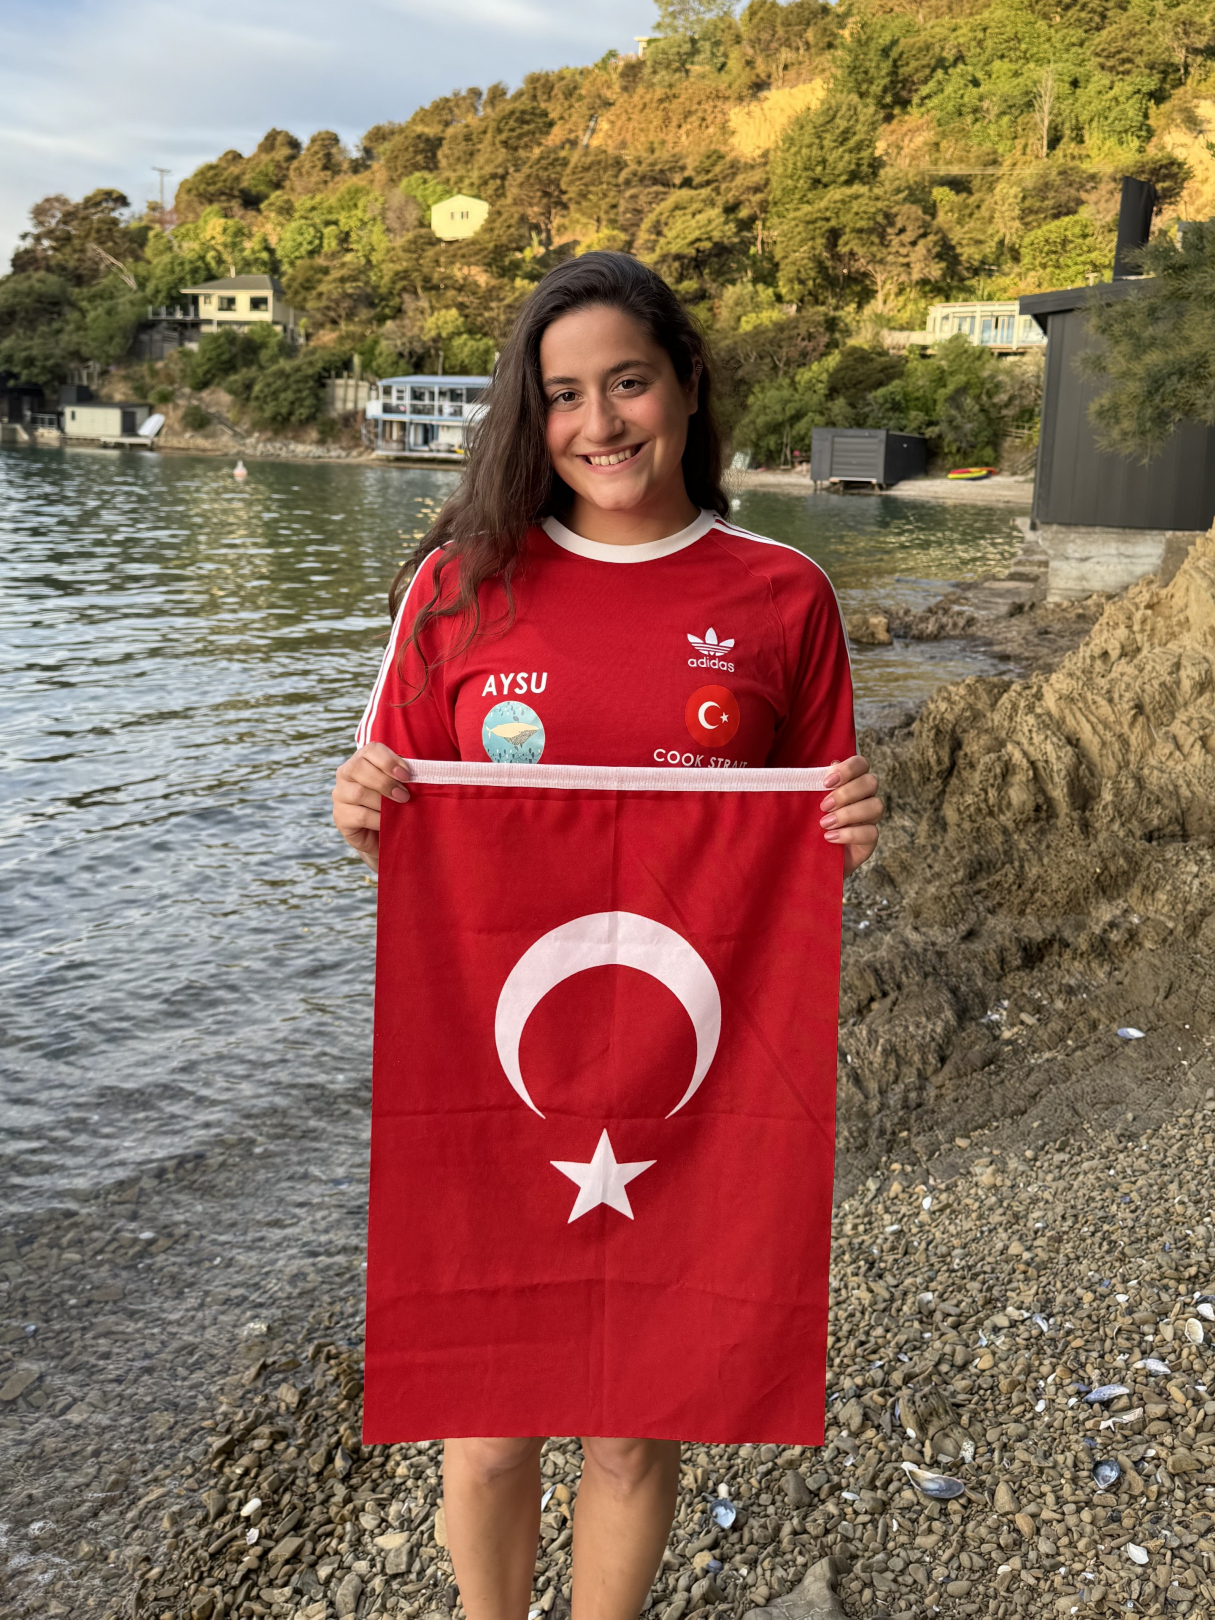 Aysu Türkoğlu: “Asla Pes Etmeyin”